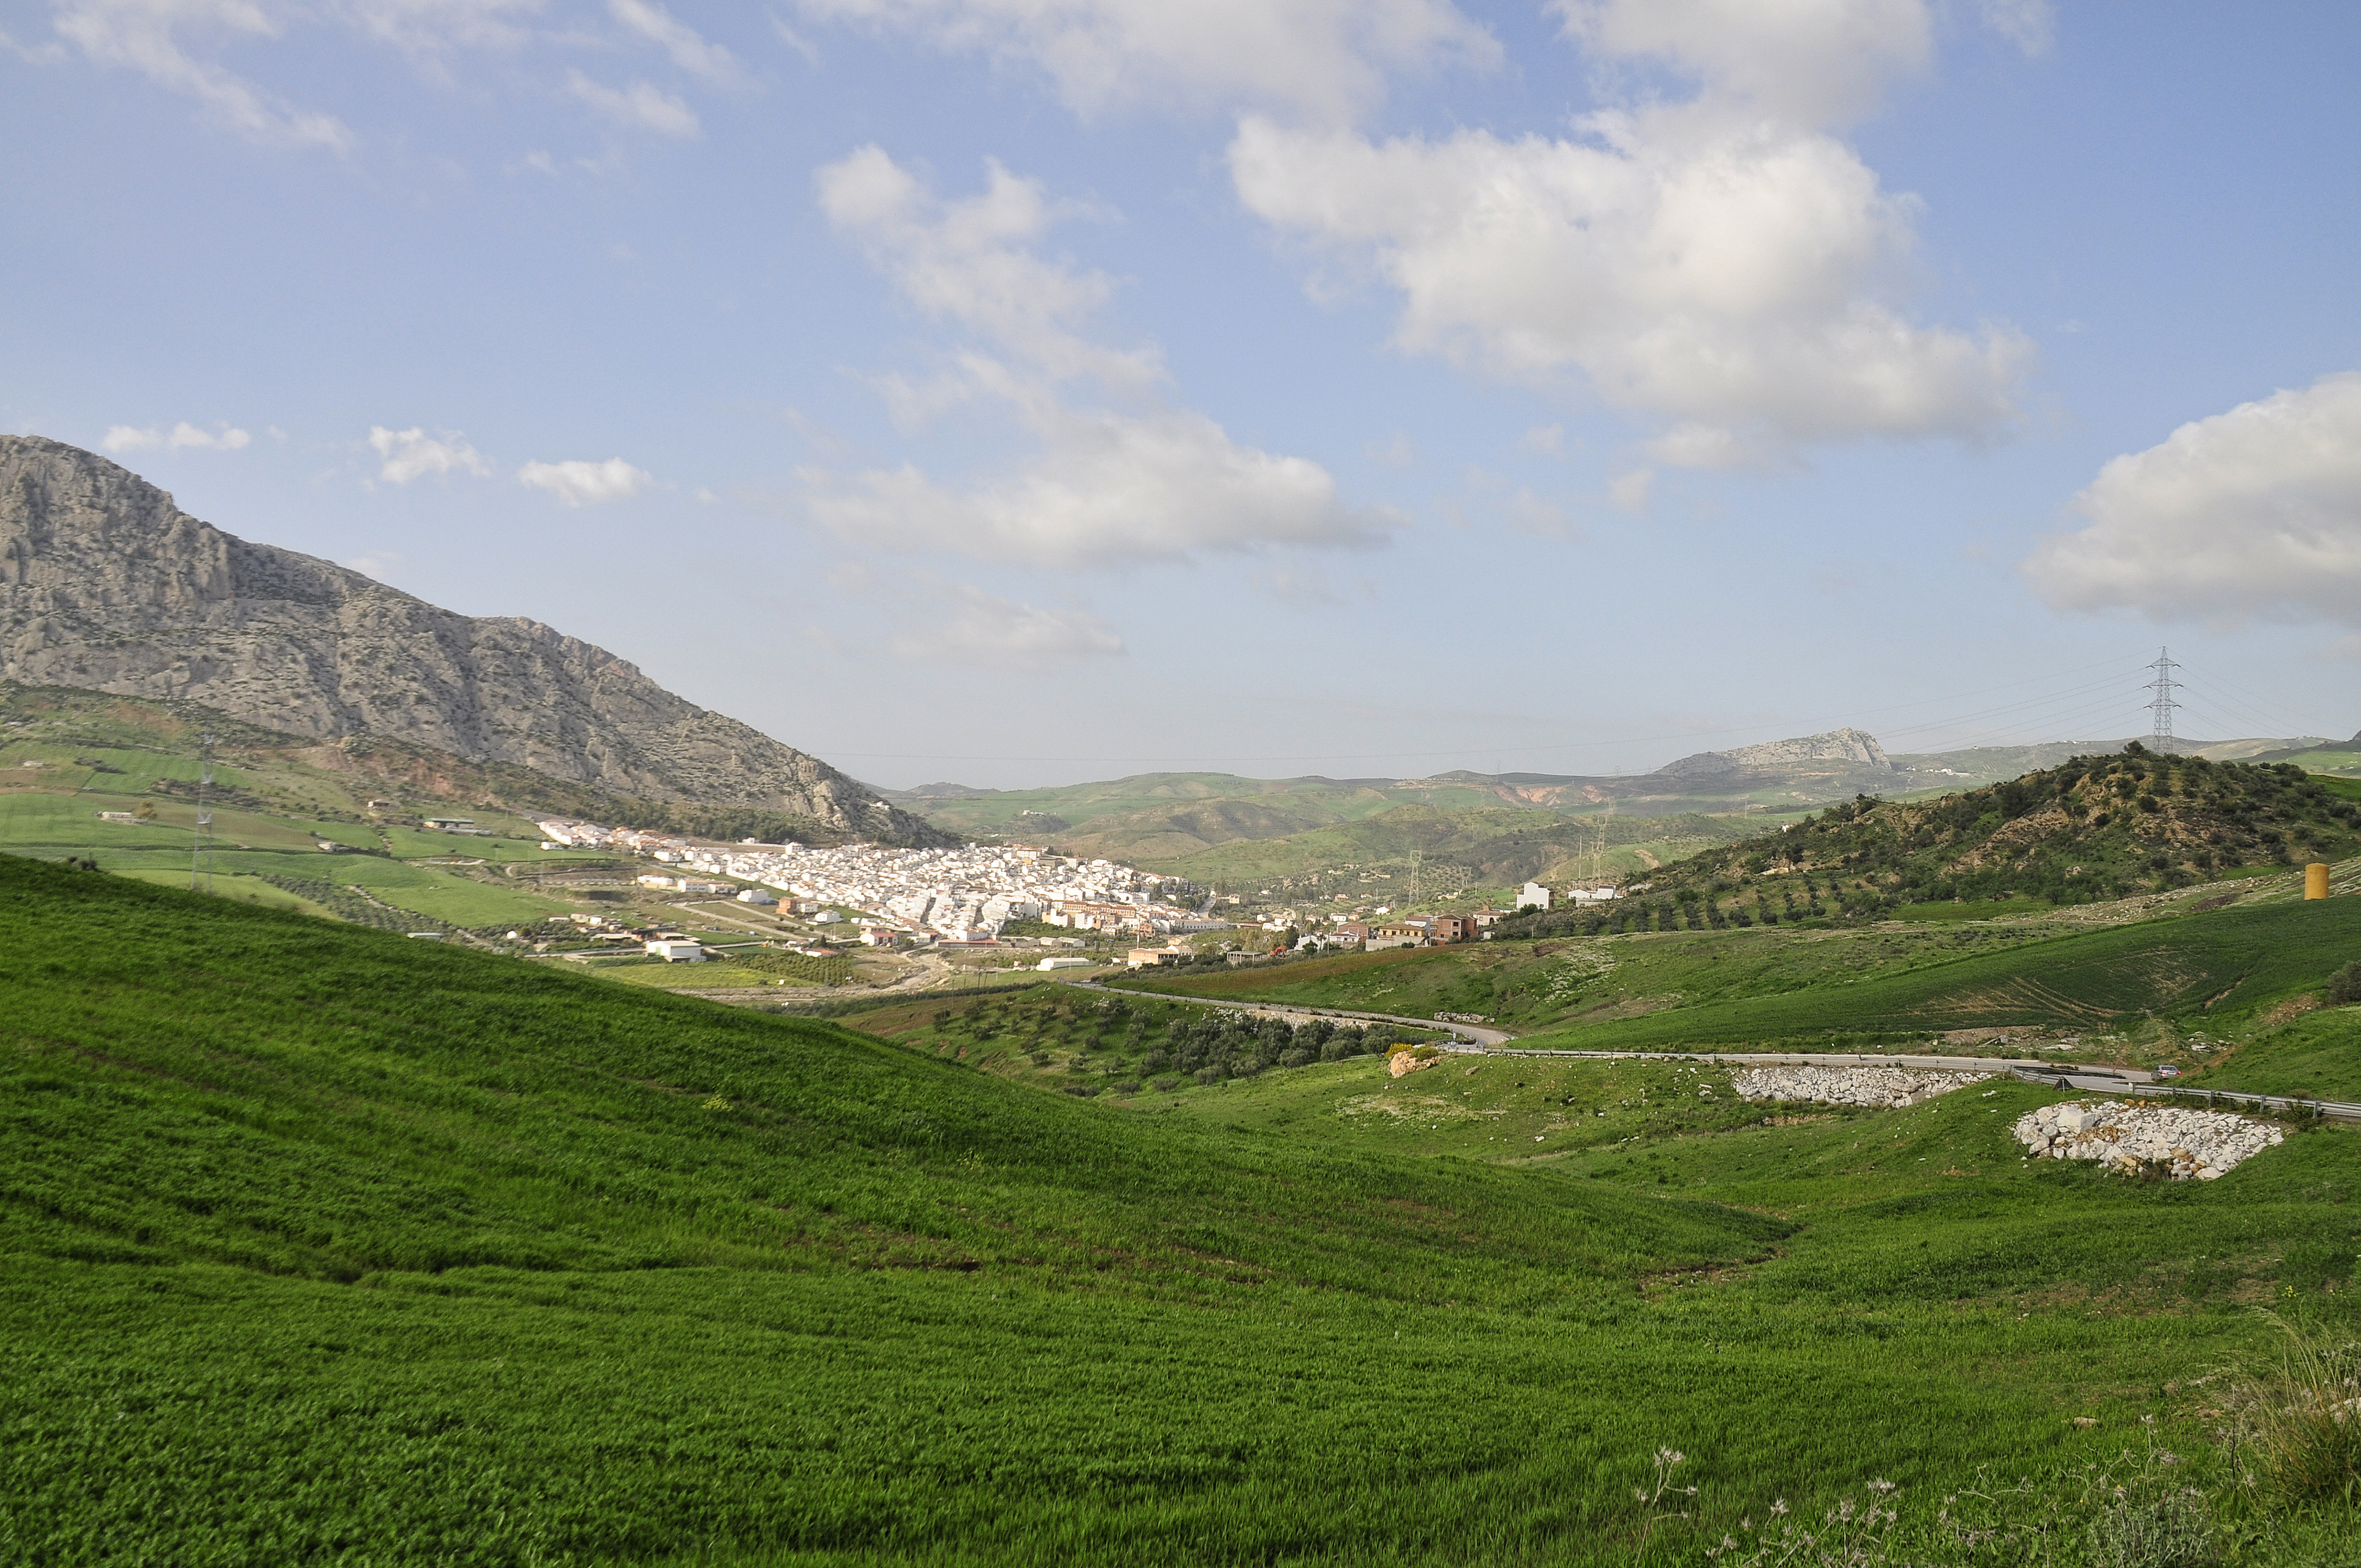 Valle de abdalajís photo